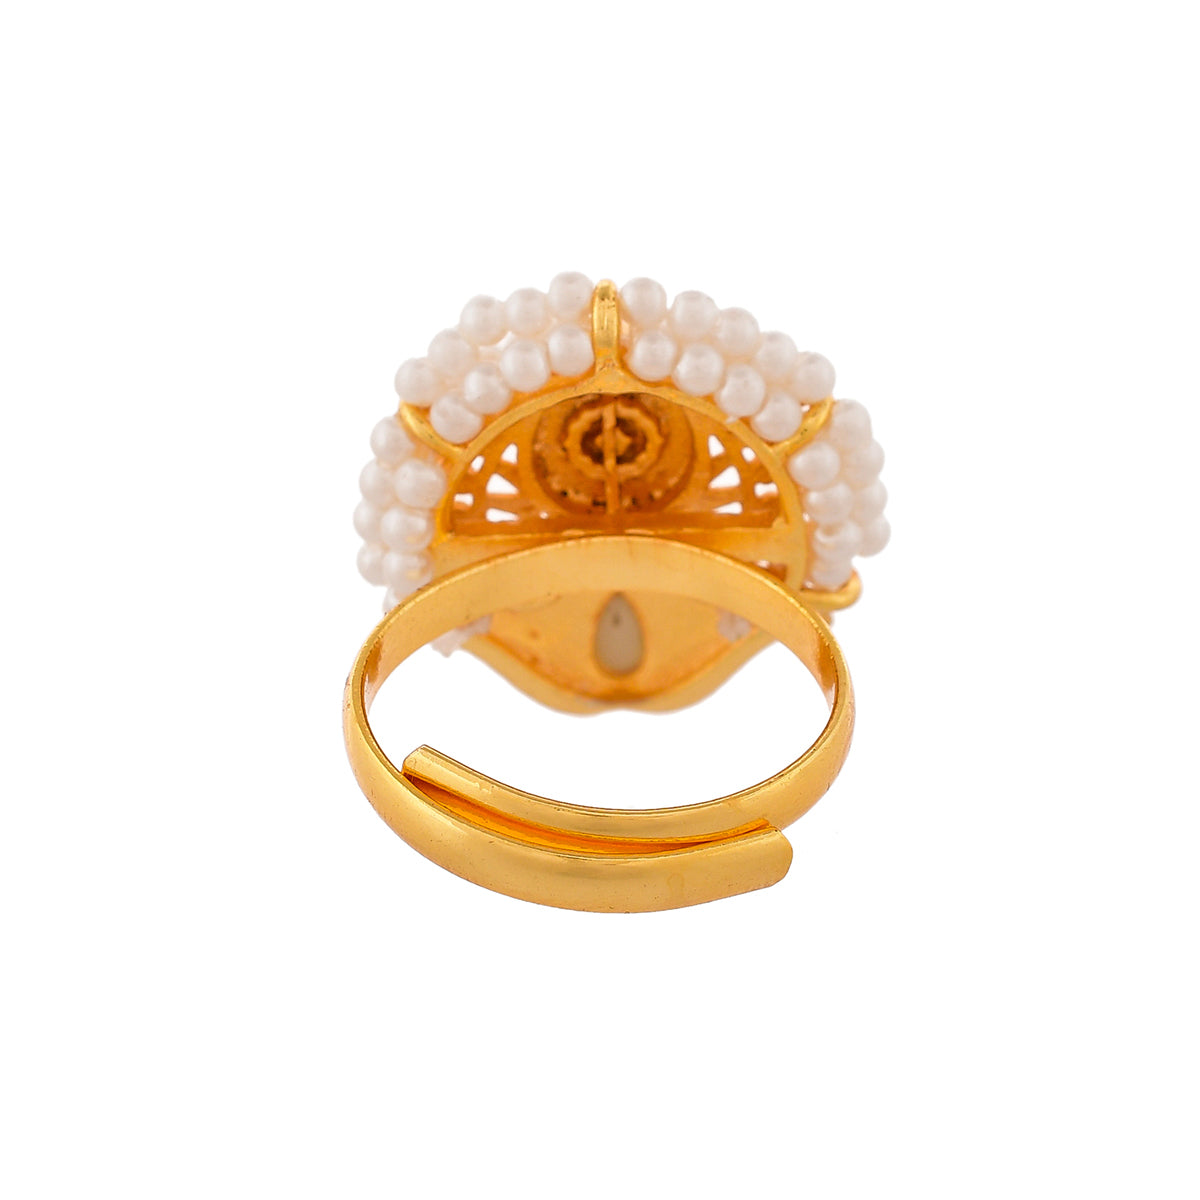 Ethnic Filigree Gold Ring